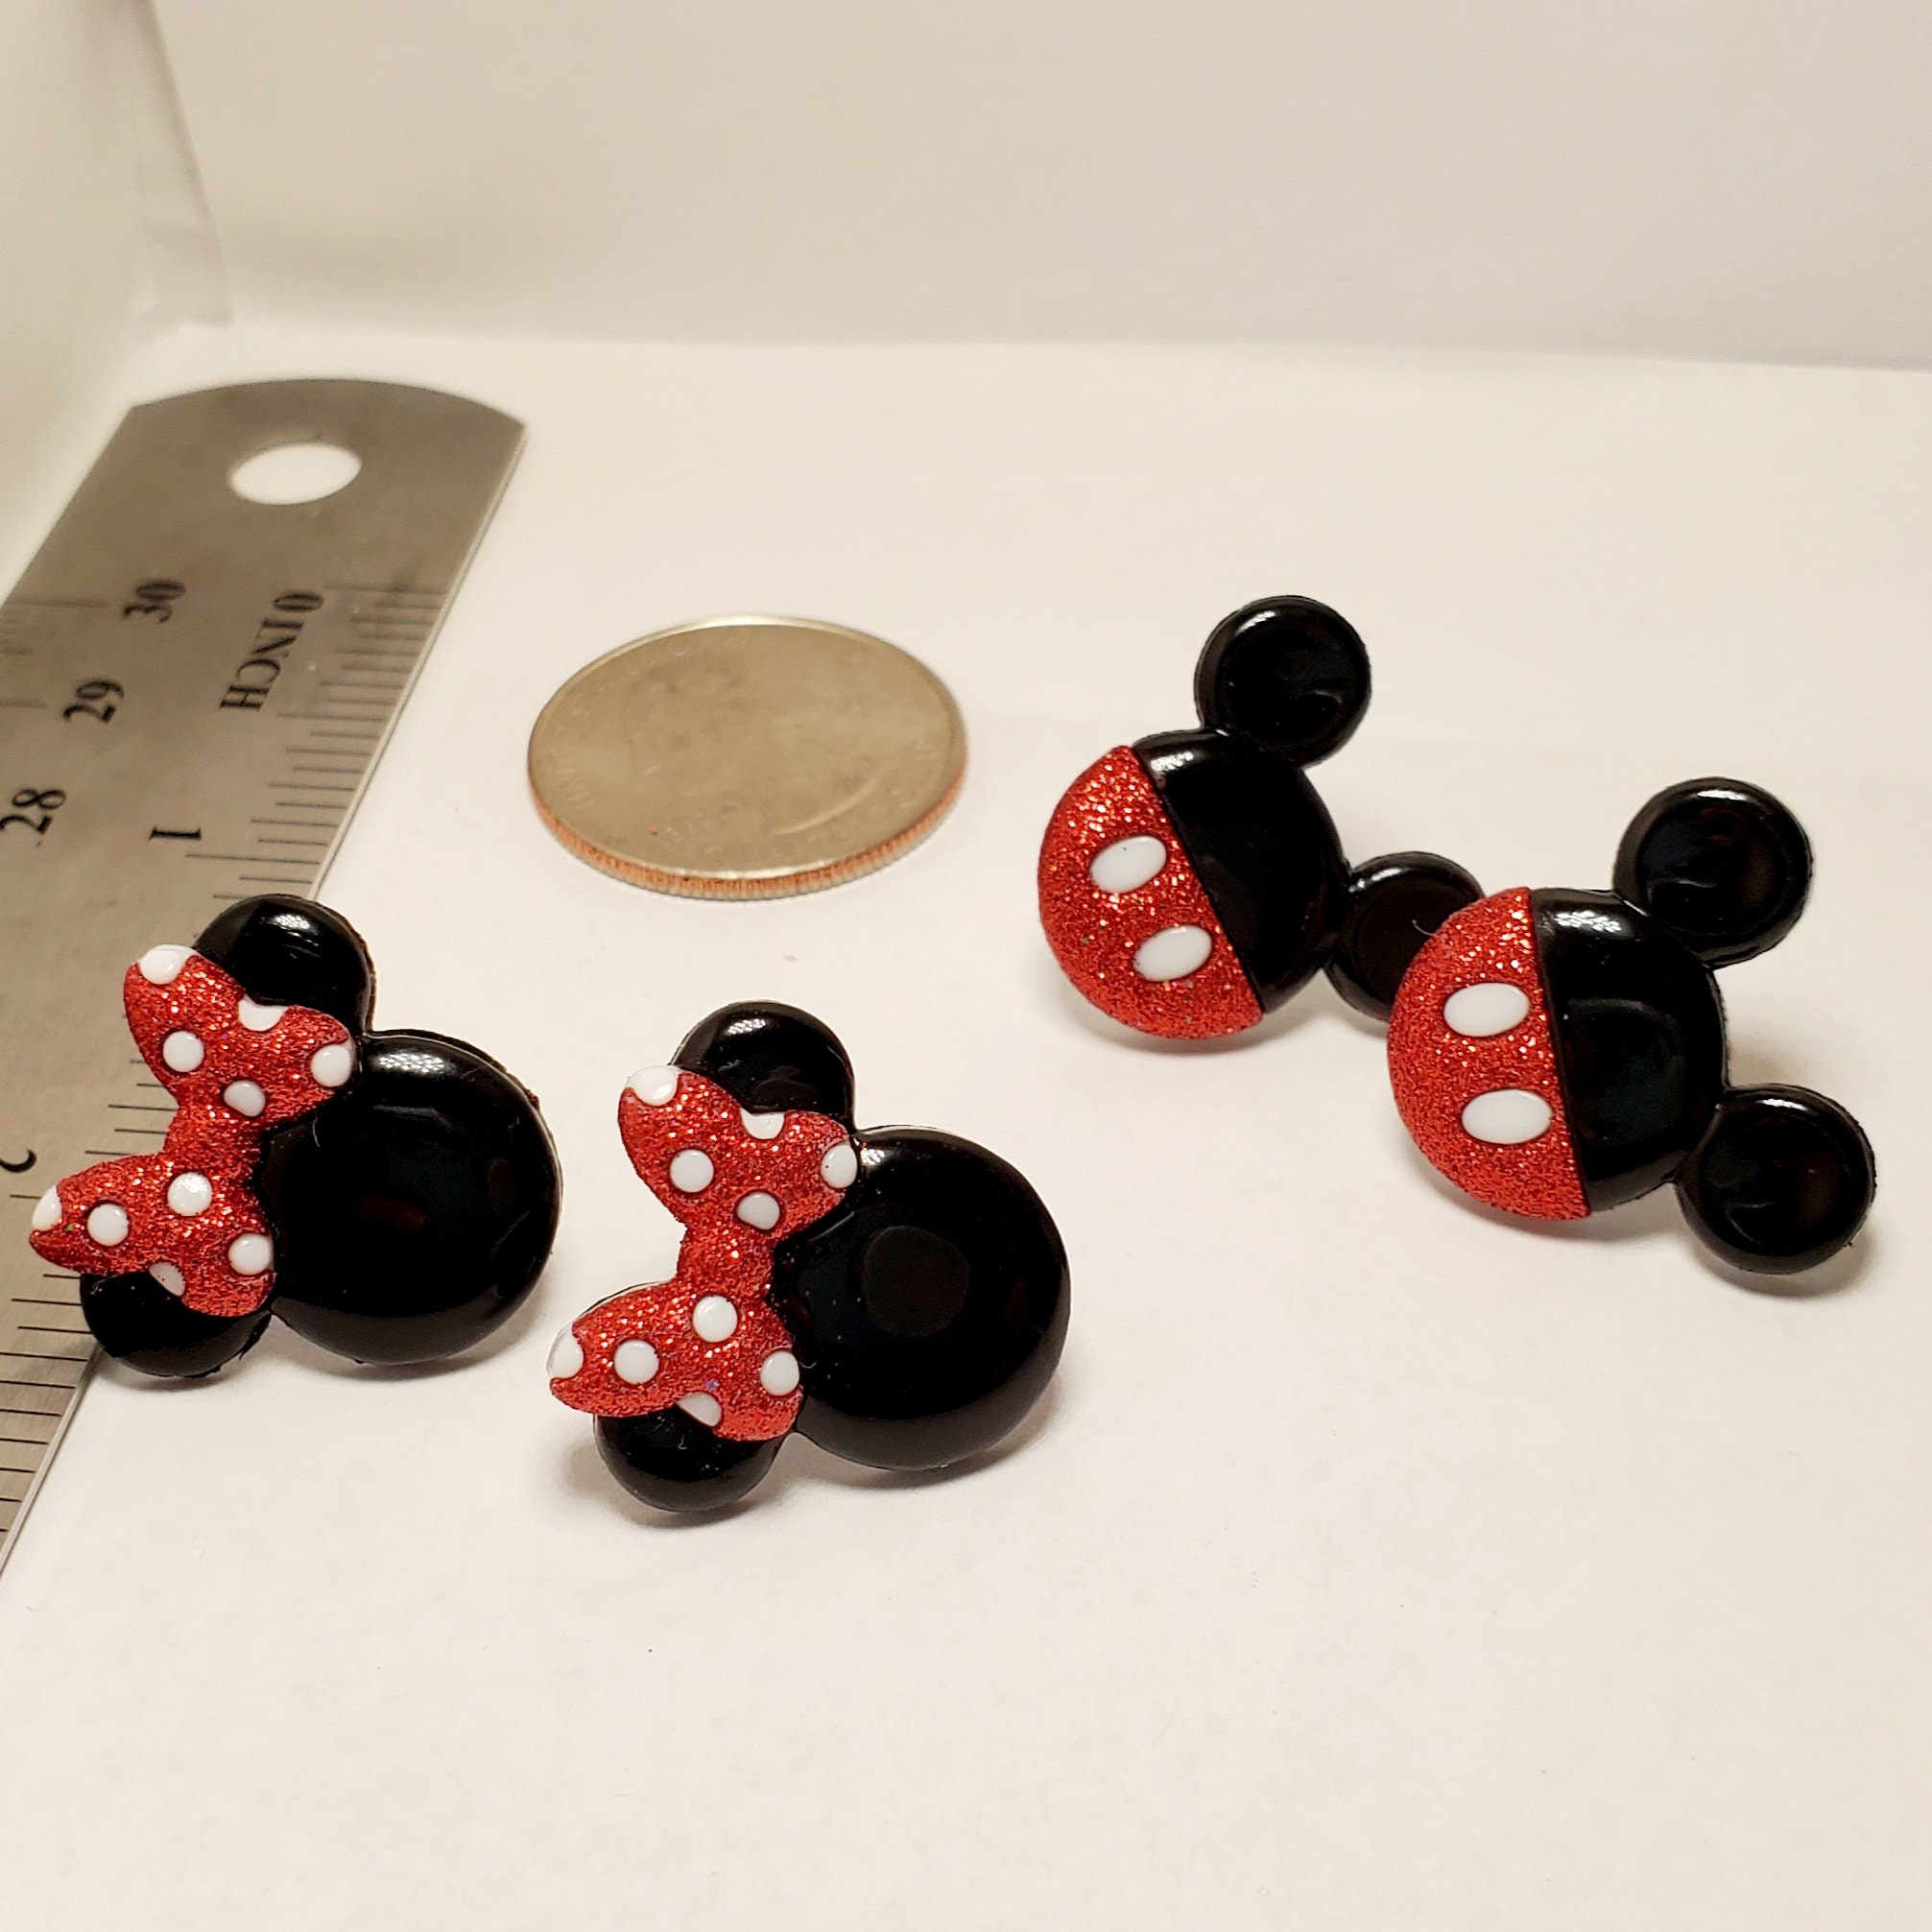 Supergangas - Orejas de Minnie y Mickey Mouse Q. 10.00 cada una. 96.00  docena